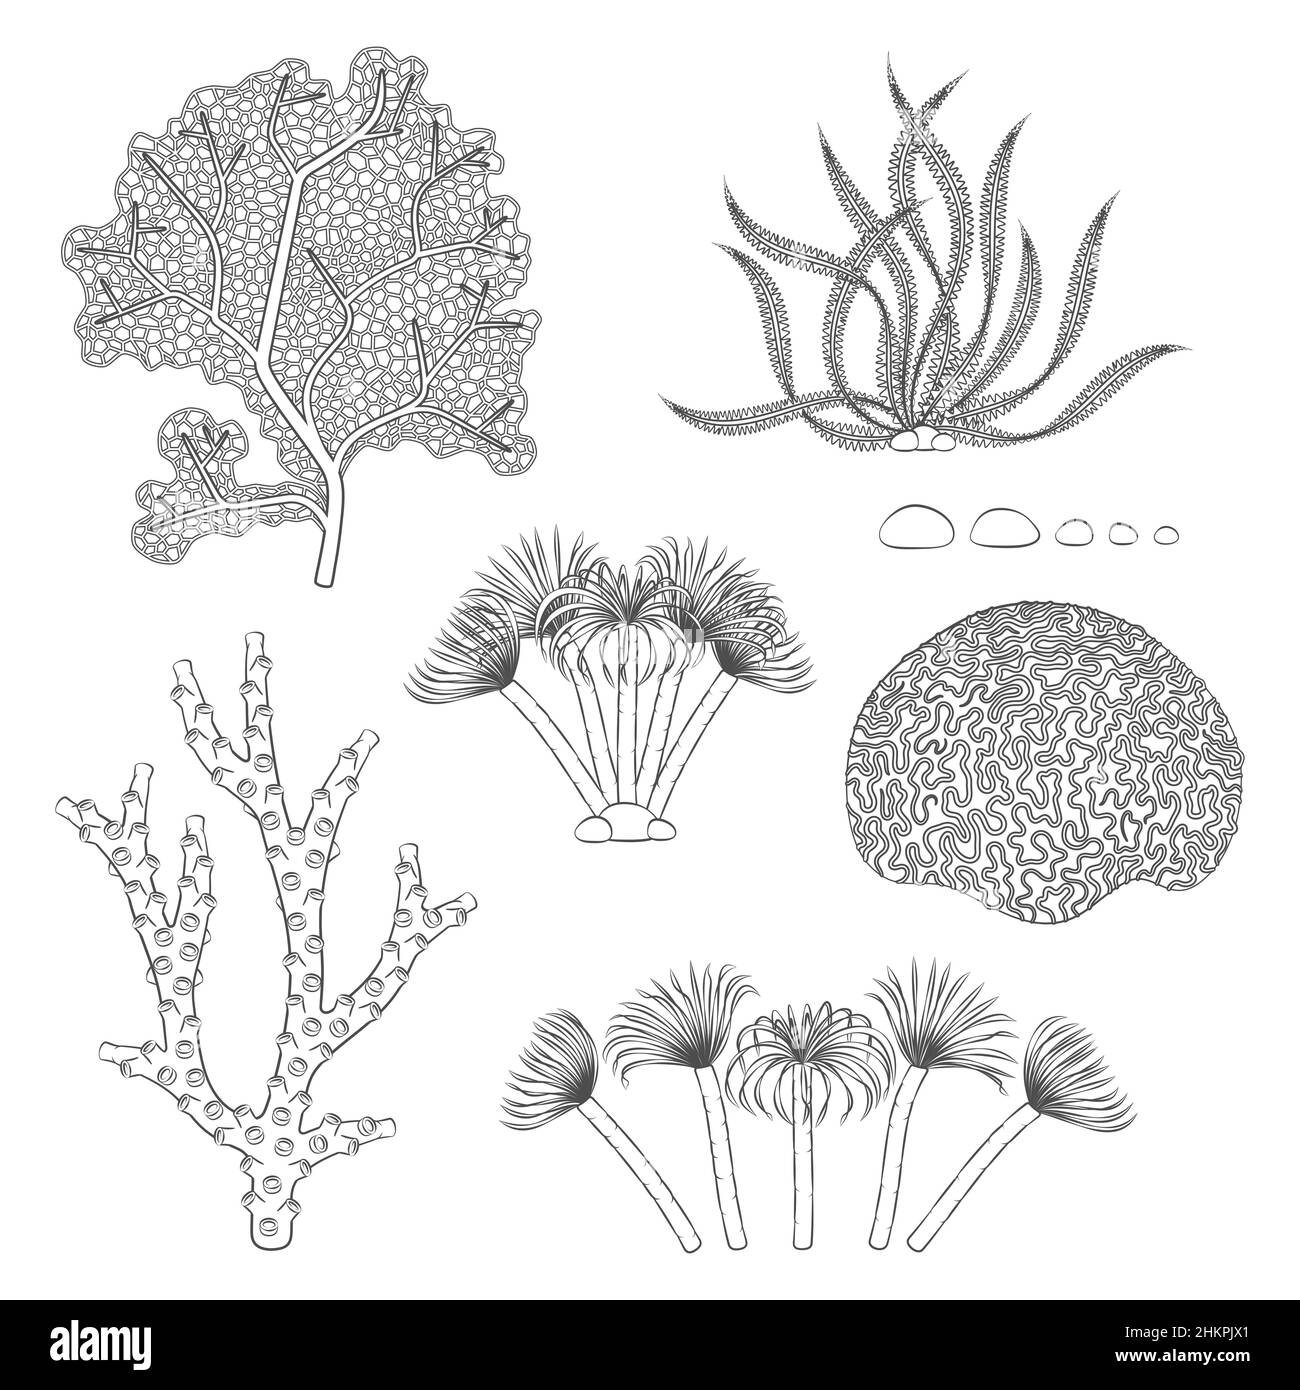 Jeu d'illustrations en noir et blanc avec coraux et algues.Objets vectoriels isolés sur fond blanc. Illustration de Vecteur